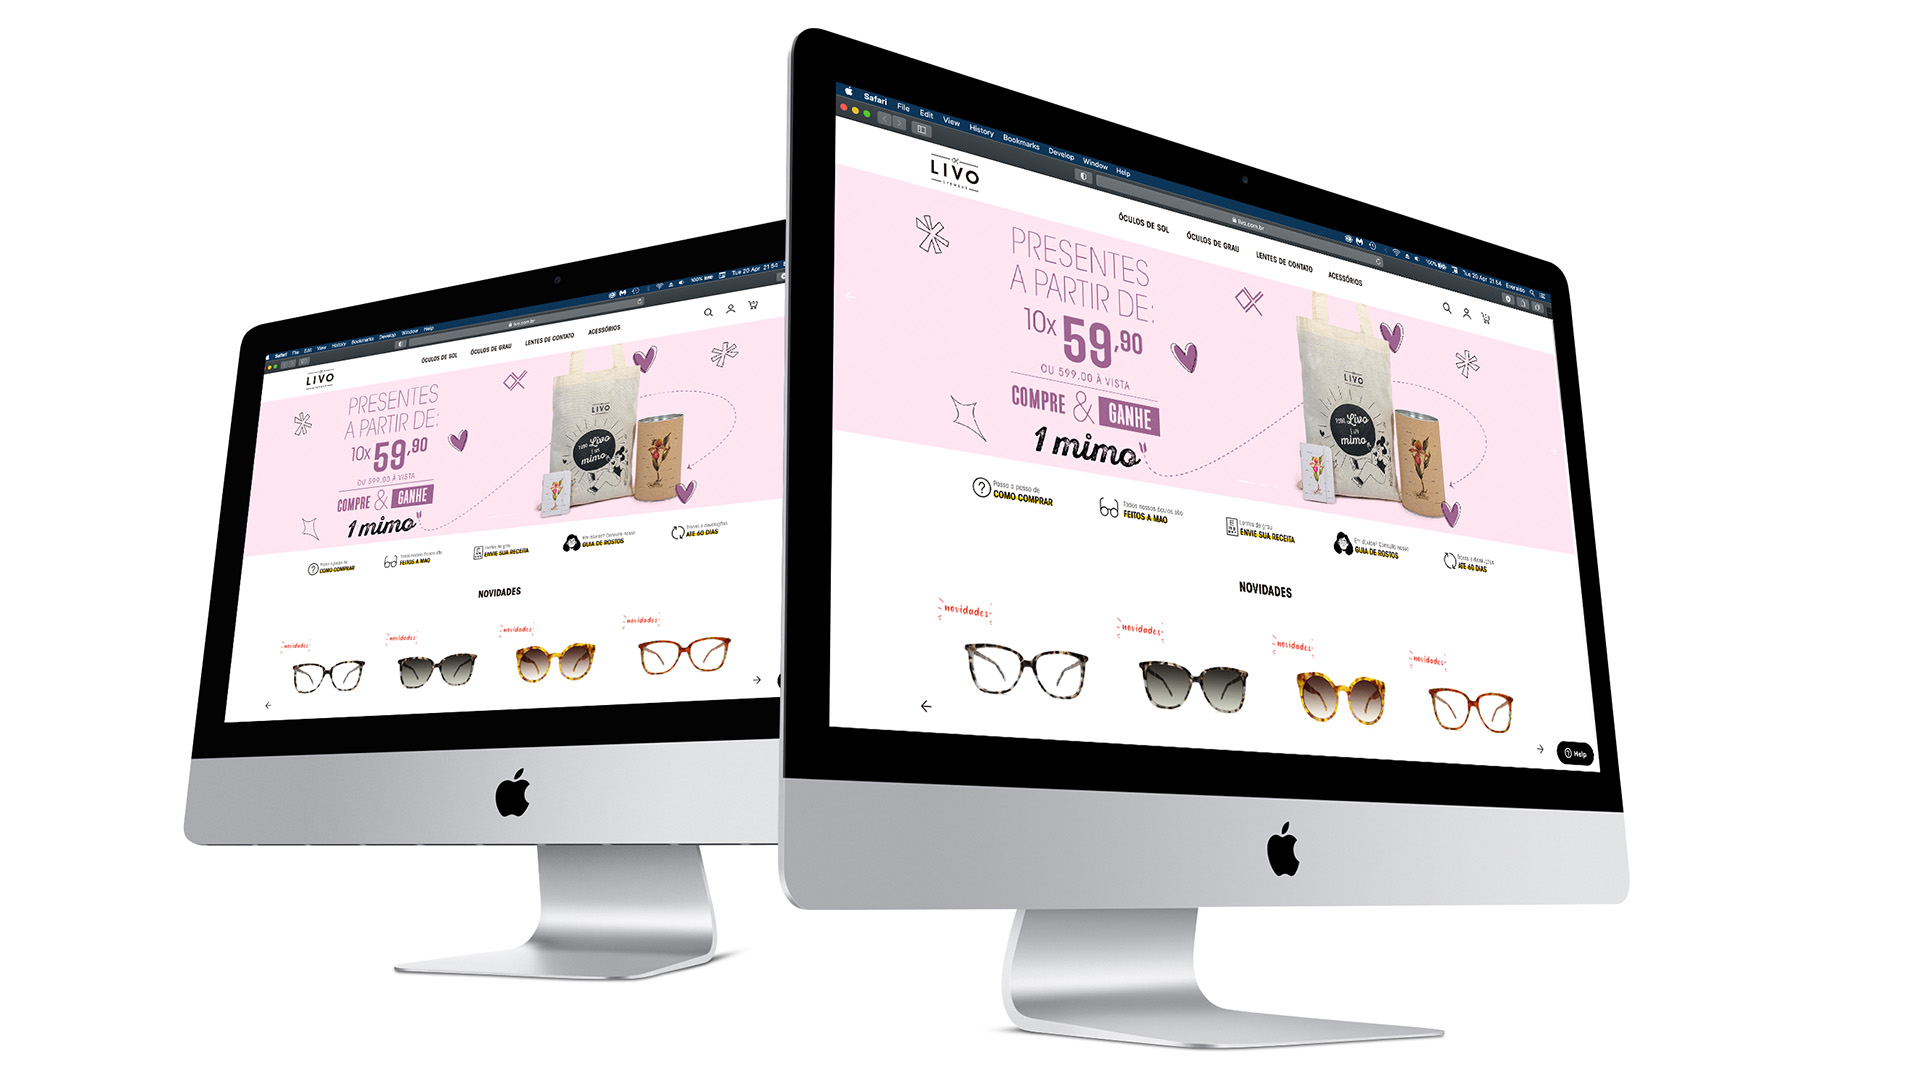 Imagem de computador Apple com o site da LIVO expondo o banner de abertura do site com a Campanha de Dia Das Mães LIVO.